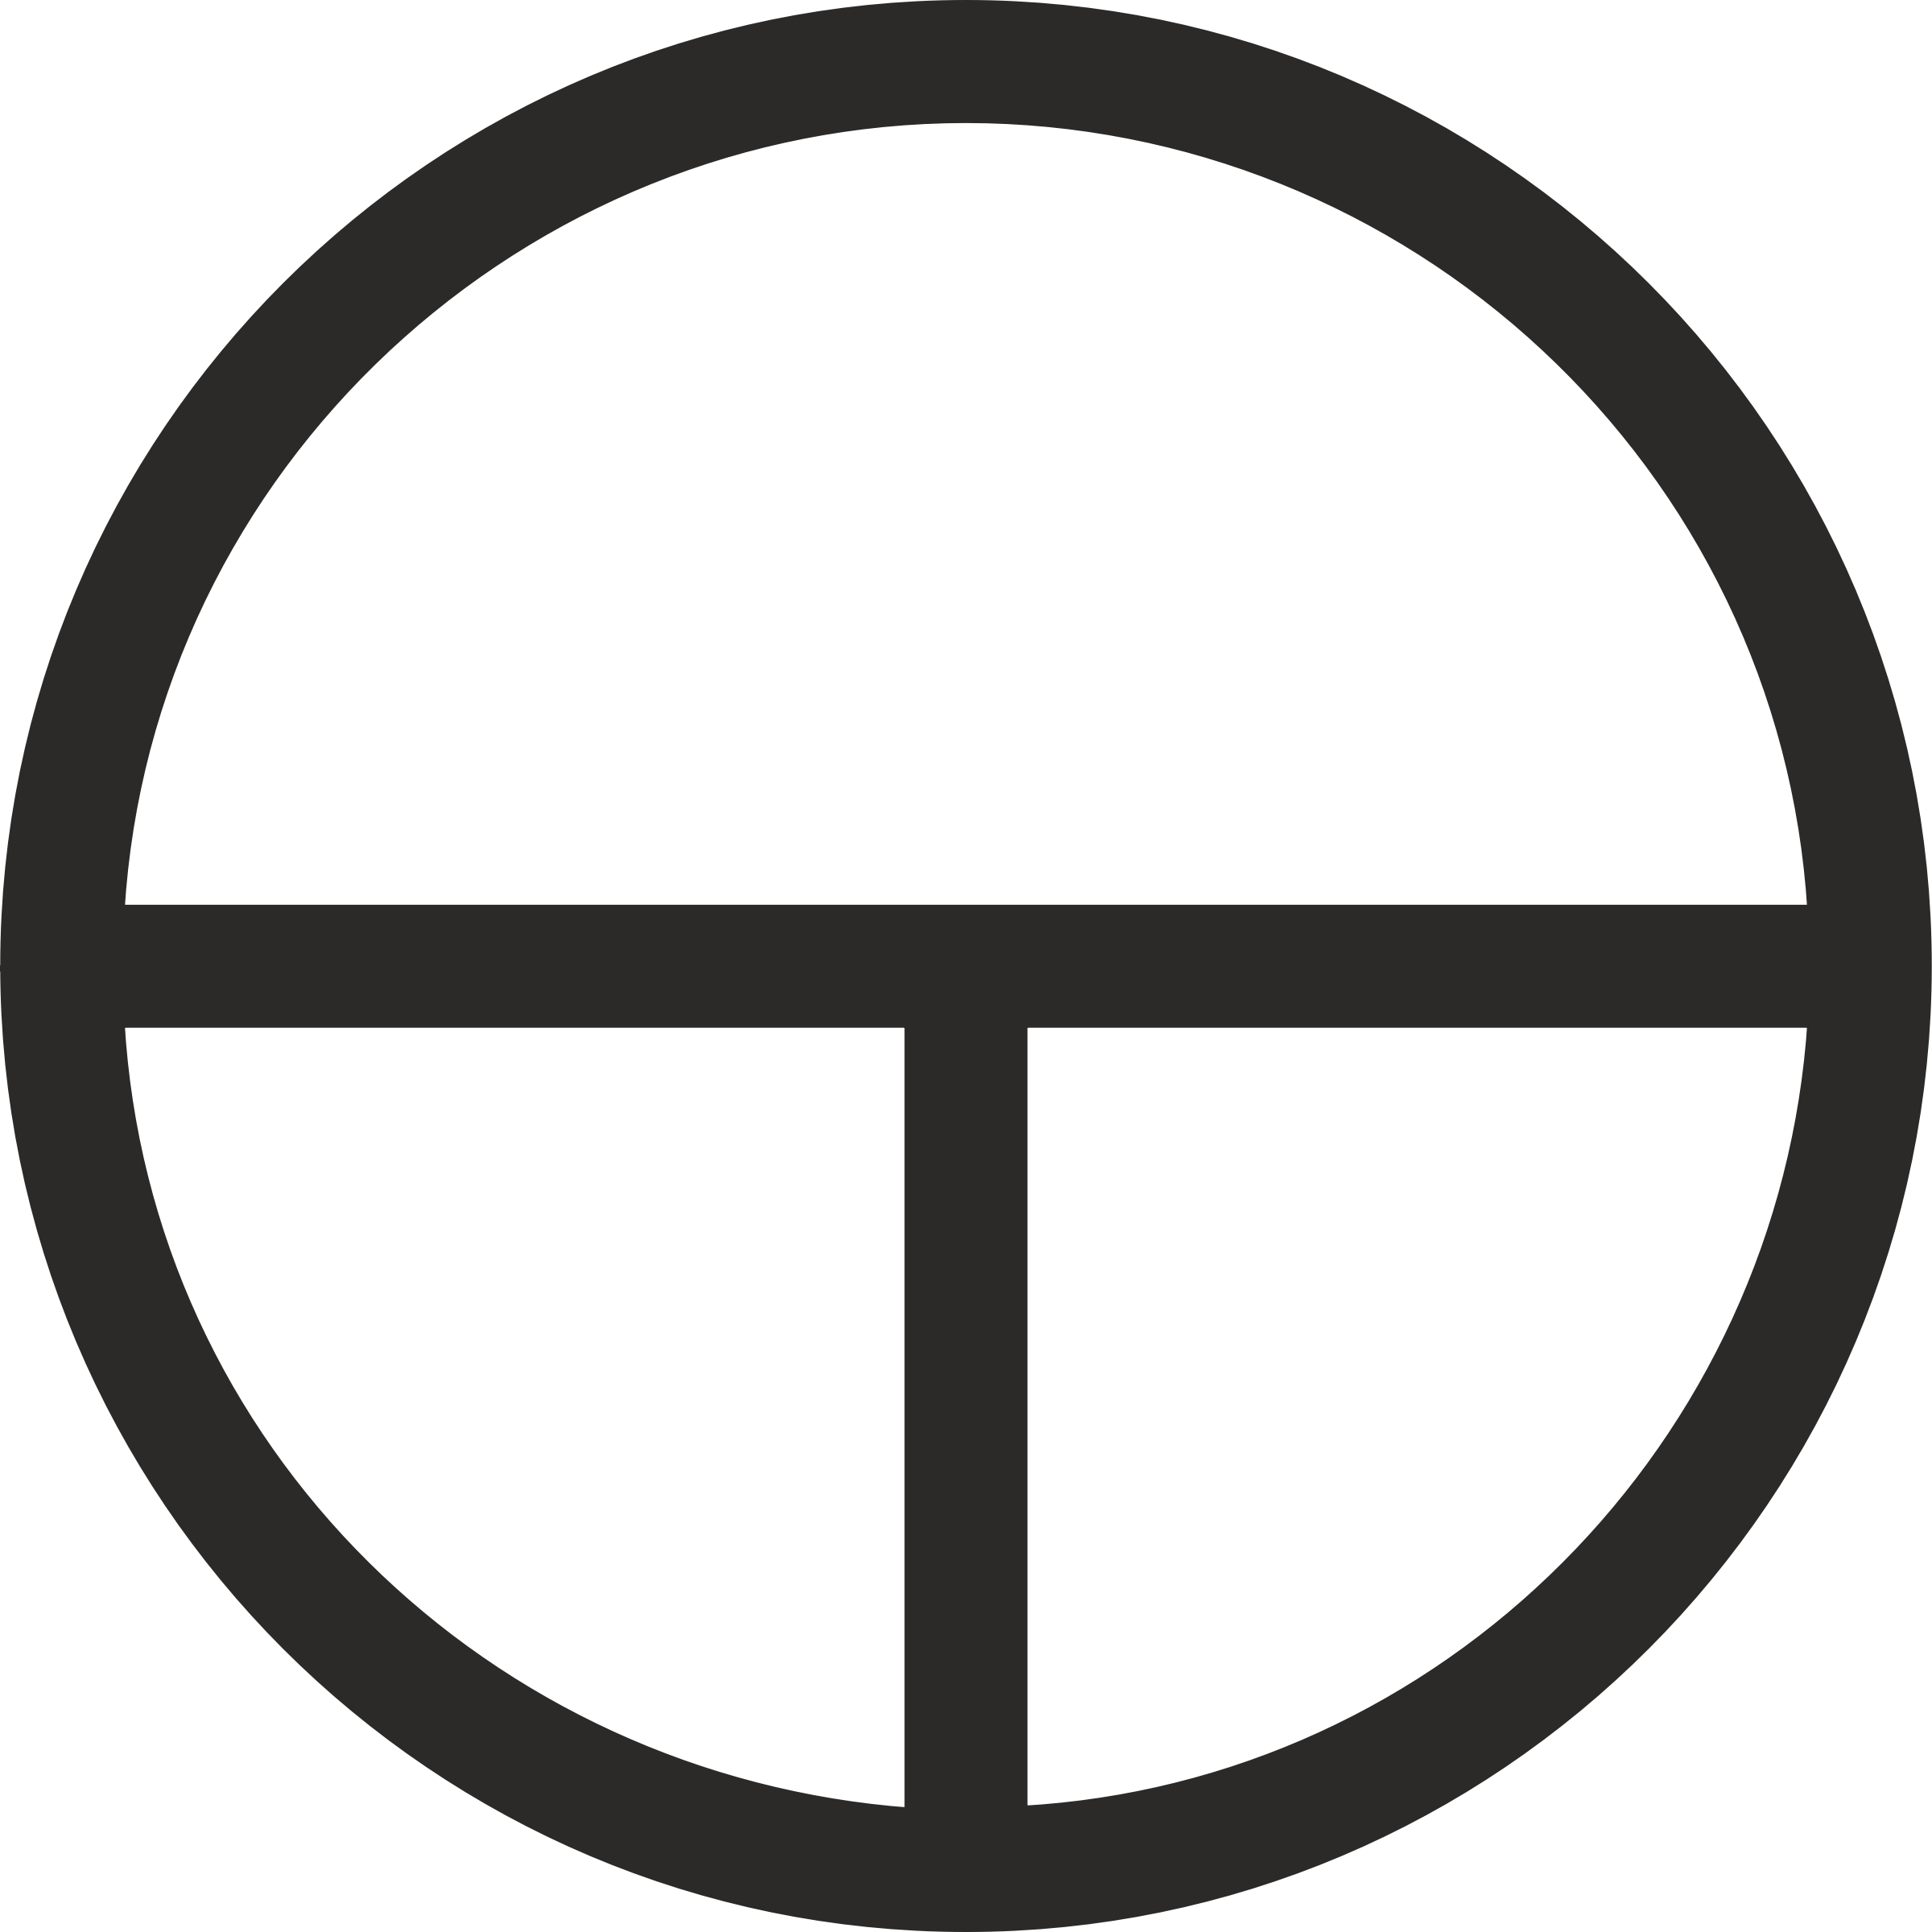 Знак линия в круге. Круг символ. Круг в круге символ. Значок кружок. Знак кружок с крестиком.